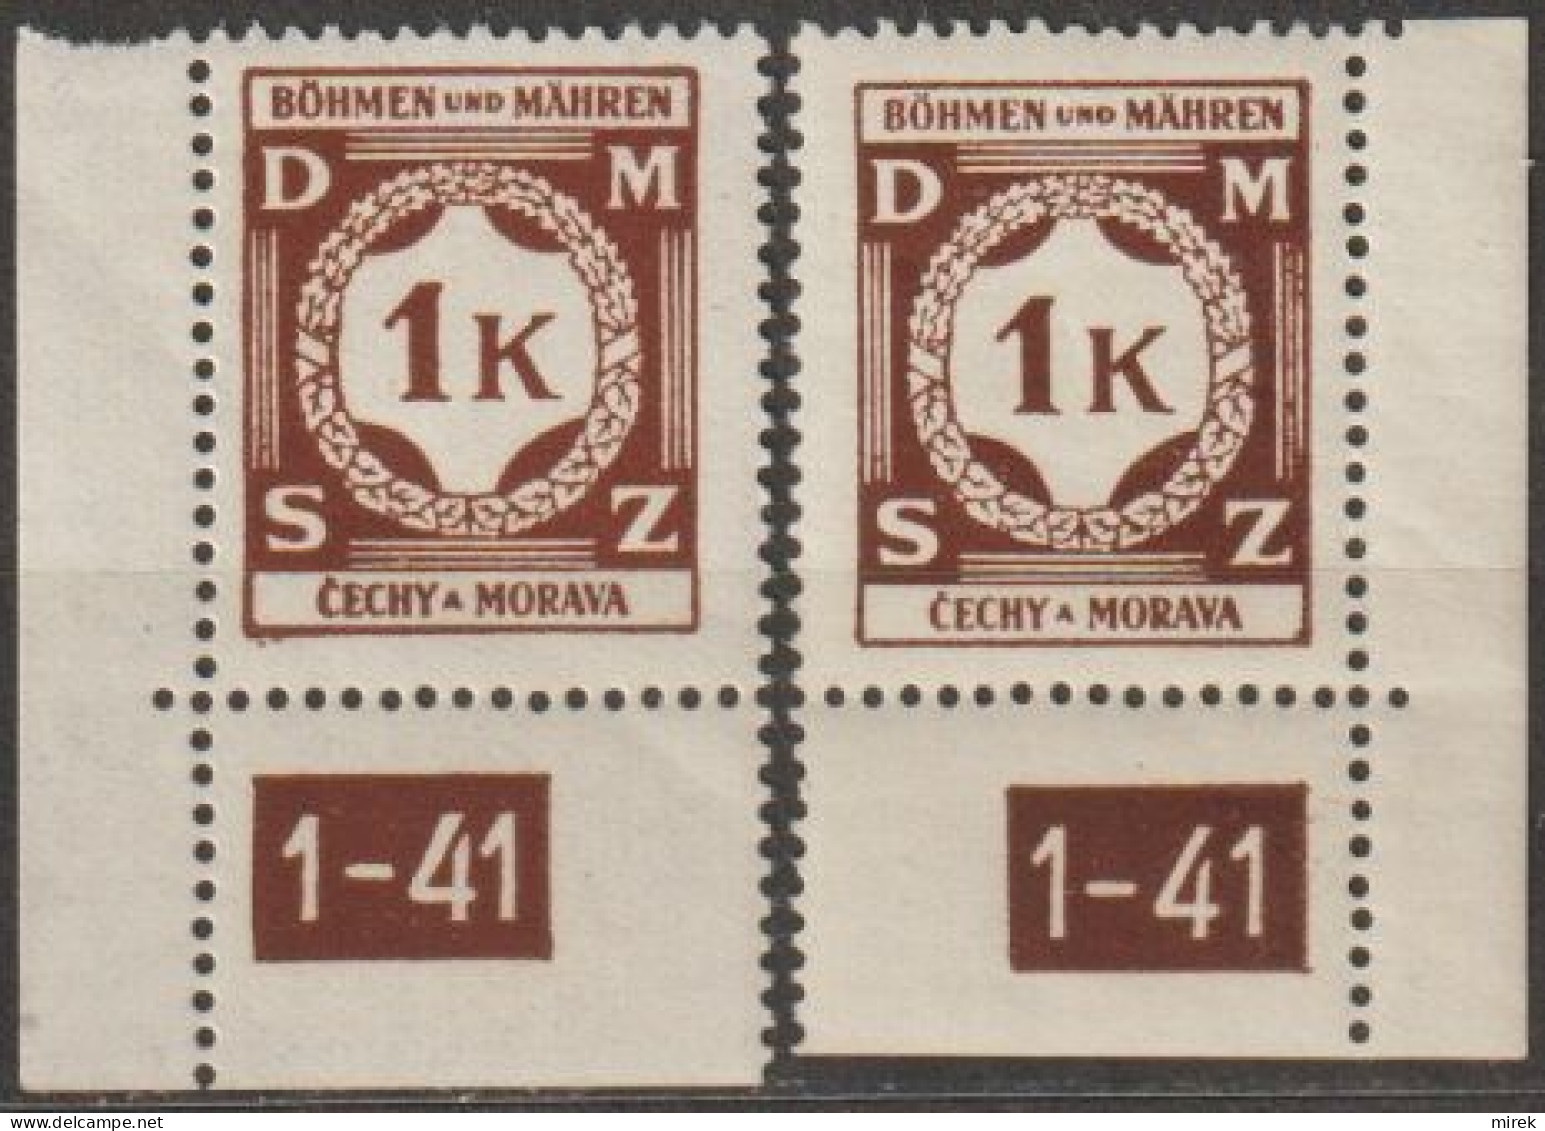 31/ Pof. SL 6, Corner Stamps, Plate Number 1-41 - Ongebruikt